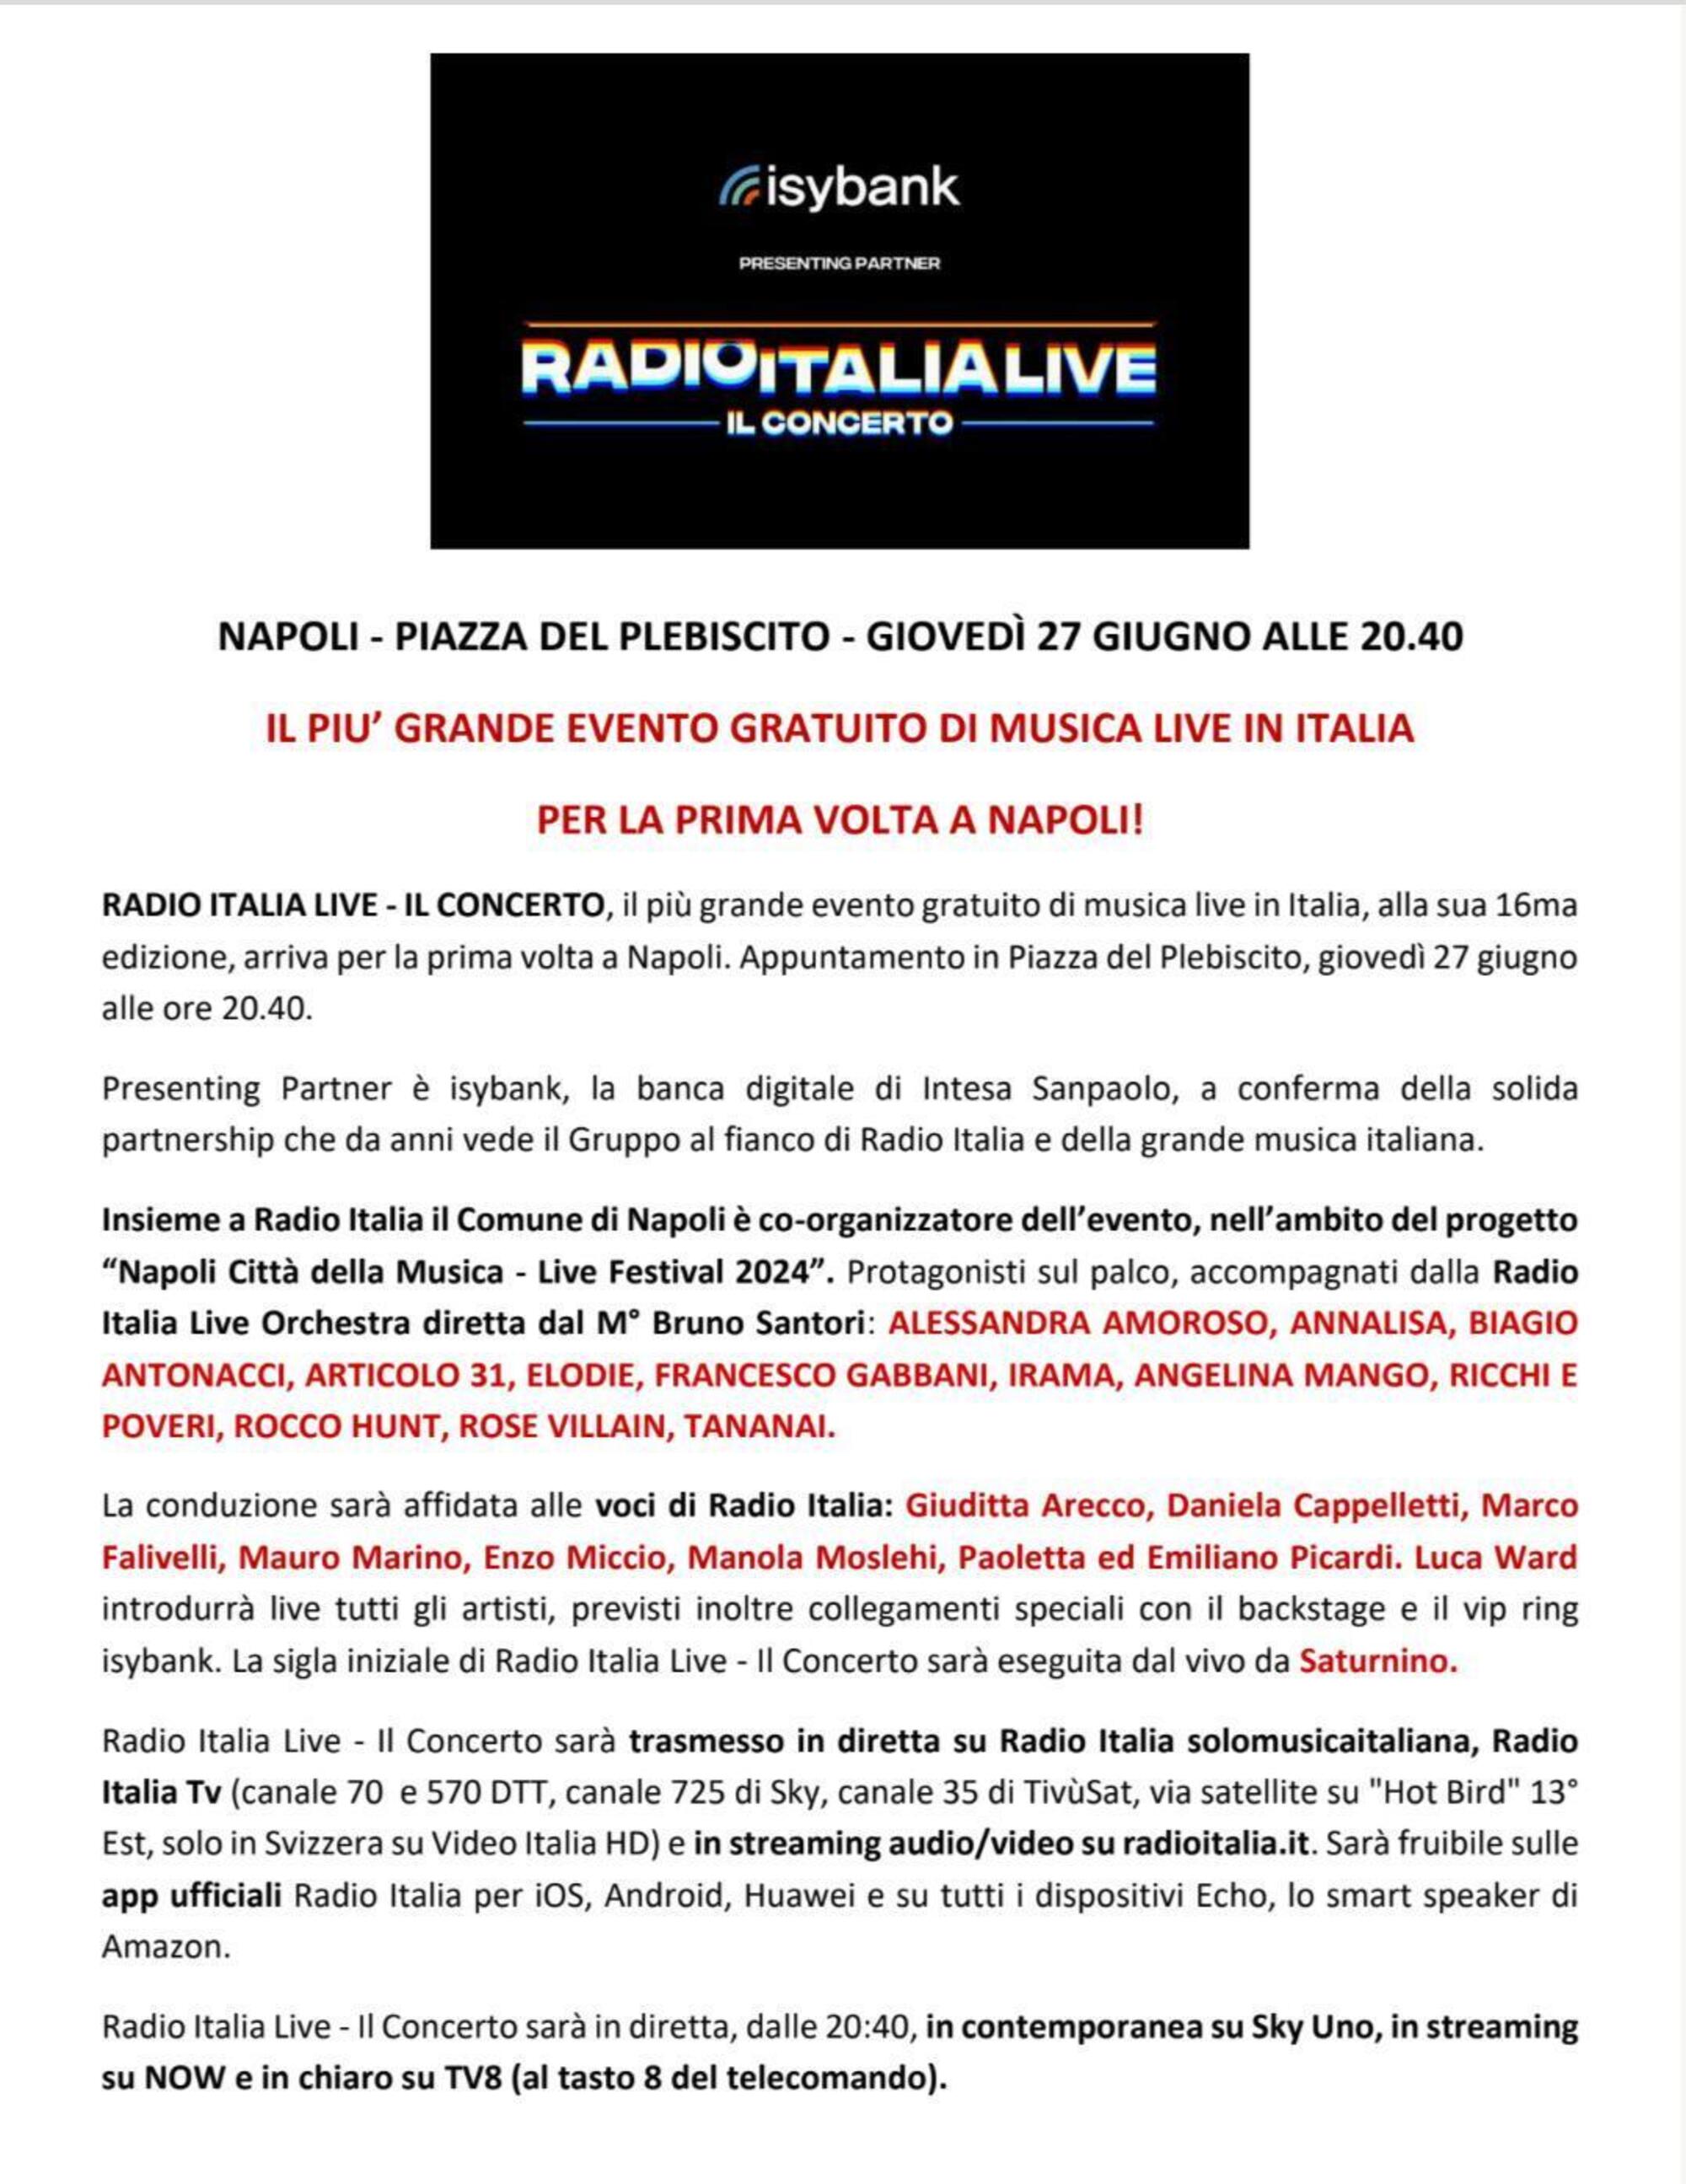 Il comunicato stampa di Radio Italia